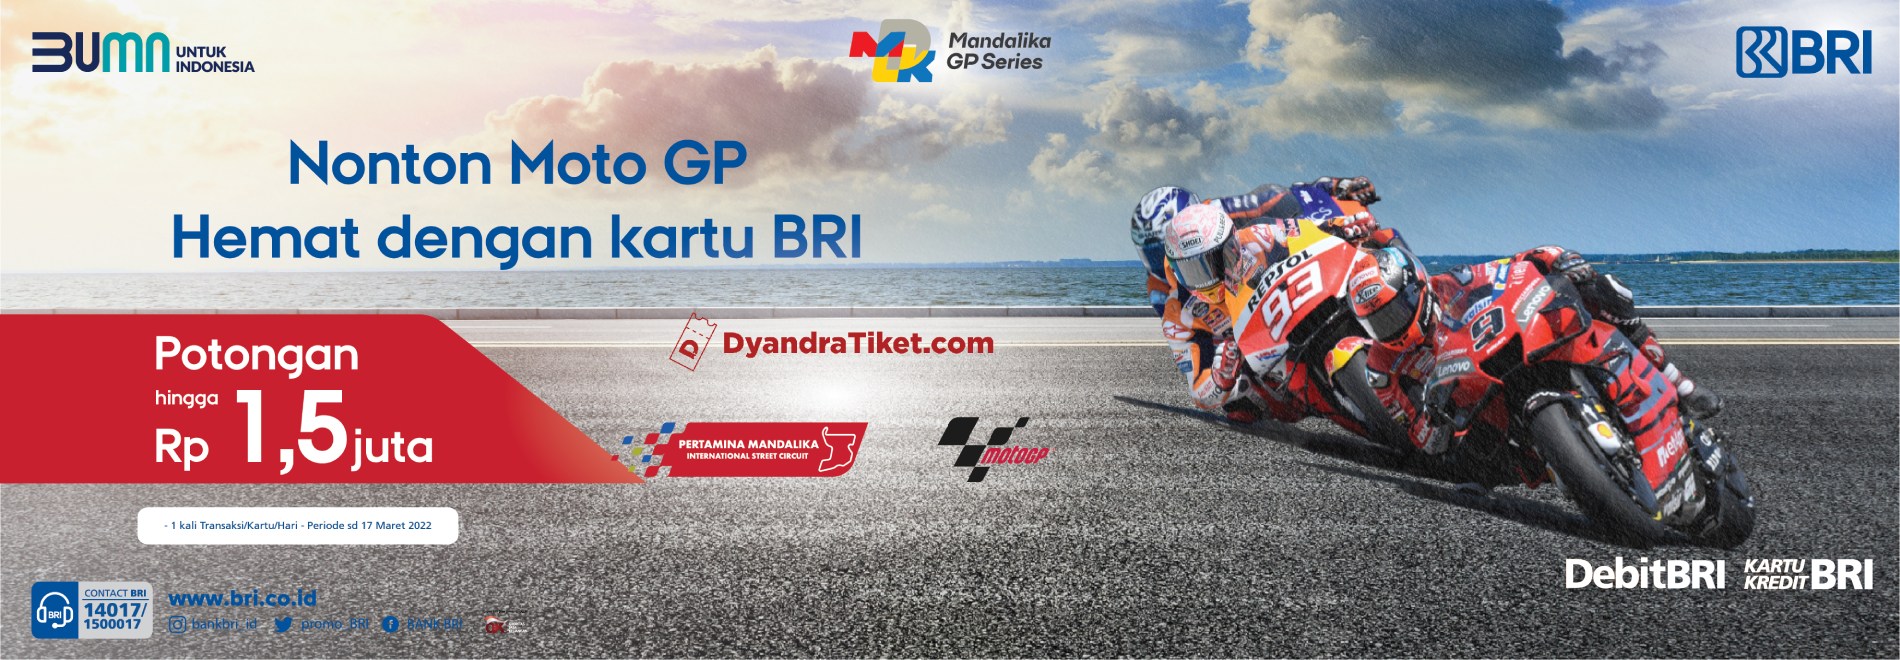 Promo BRI Debit MotoGP 2022